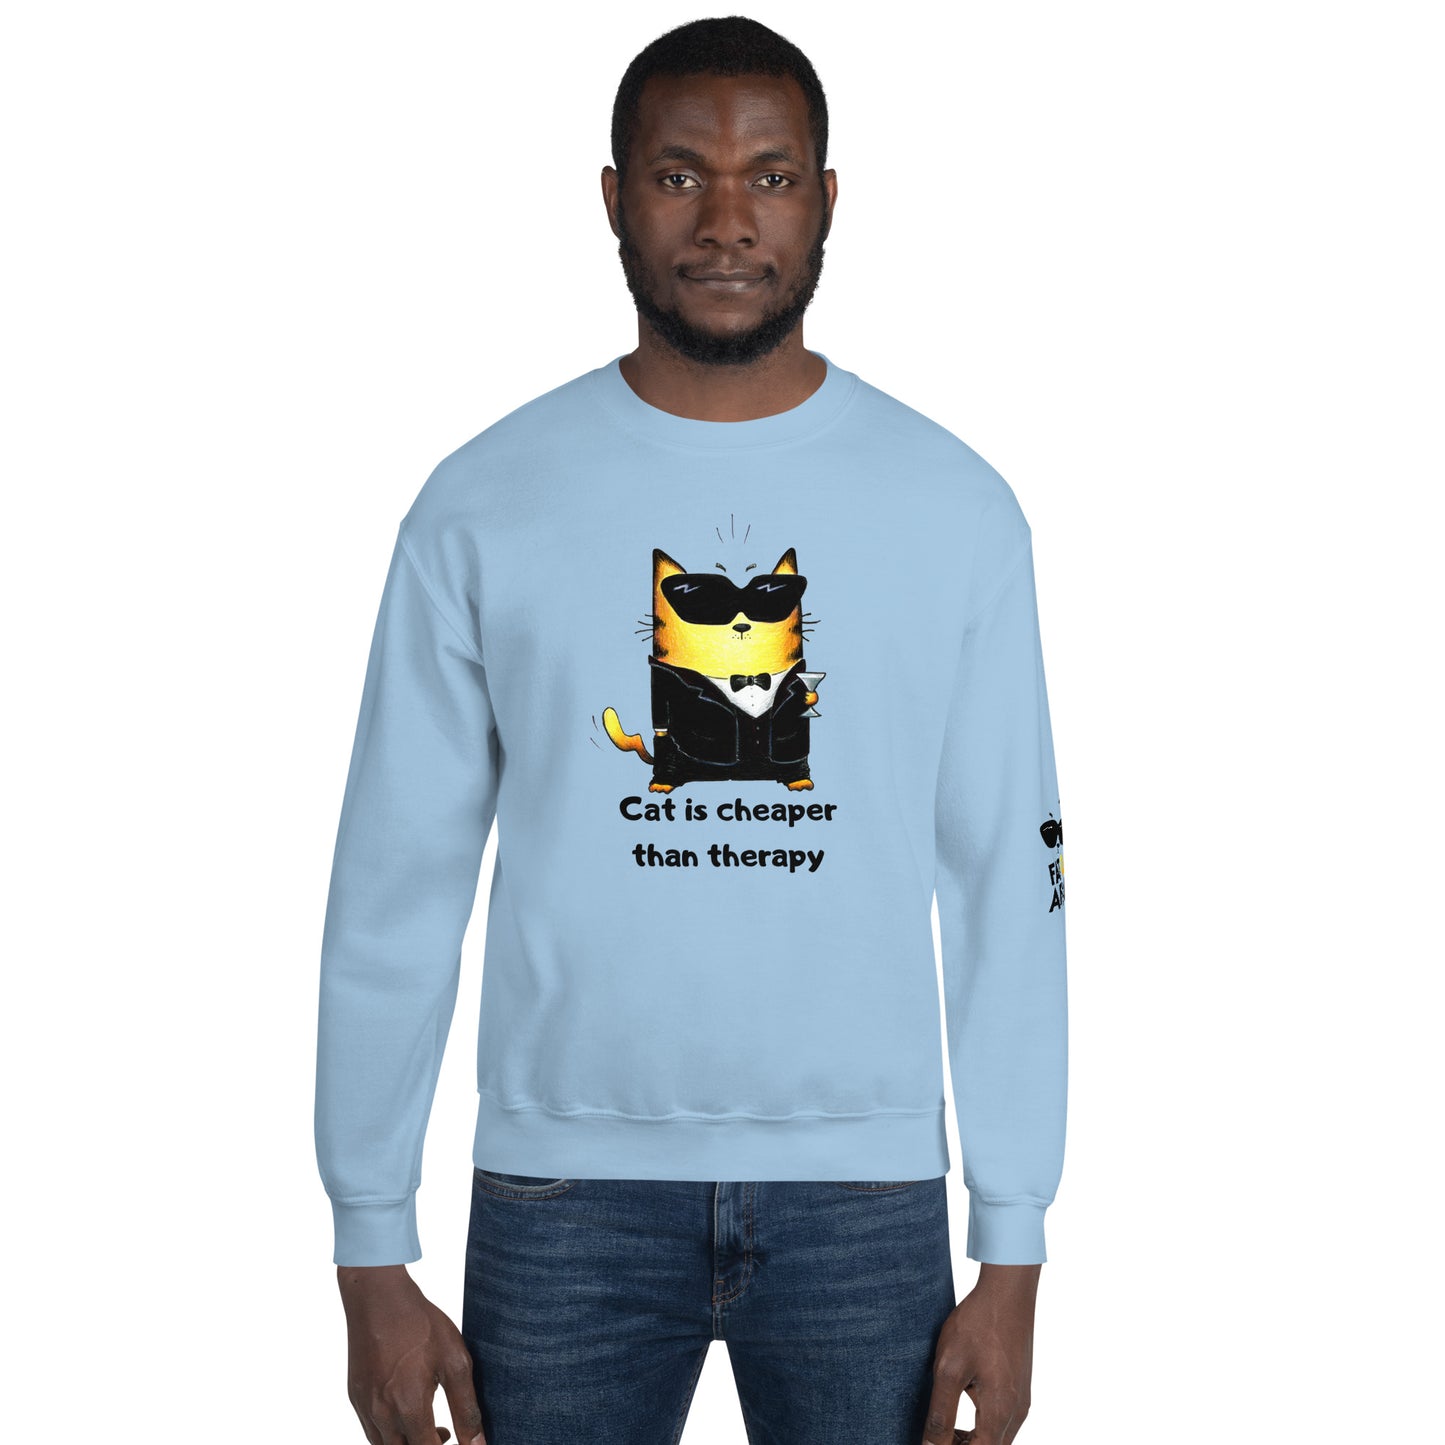 Men's Sweatshirt "Therapy Cat"